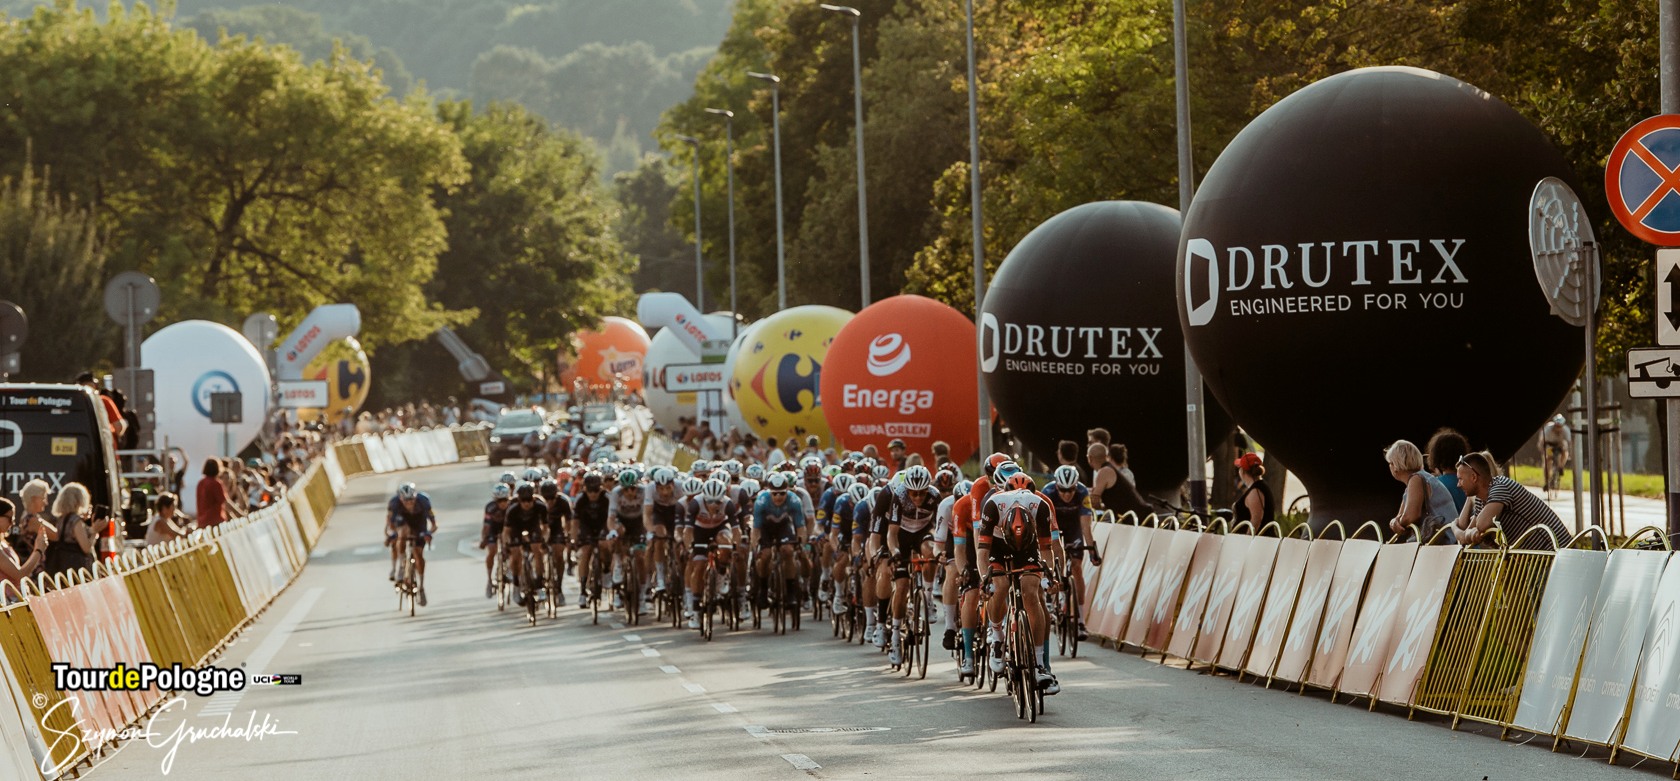 DRUTEX ist erneut offizieller Sponsor der Tour de Pologne